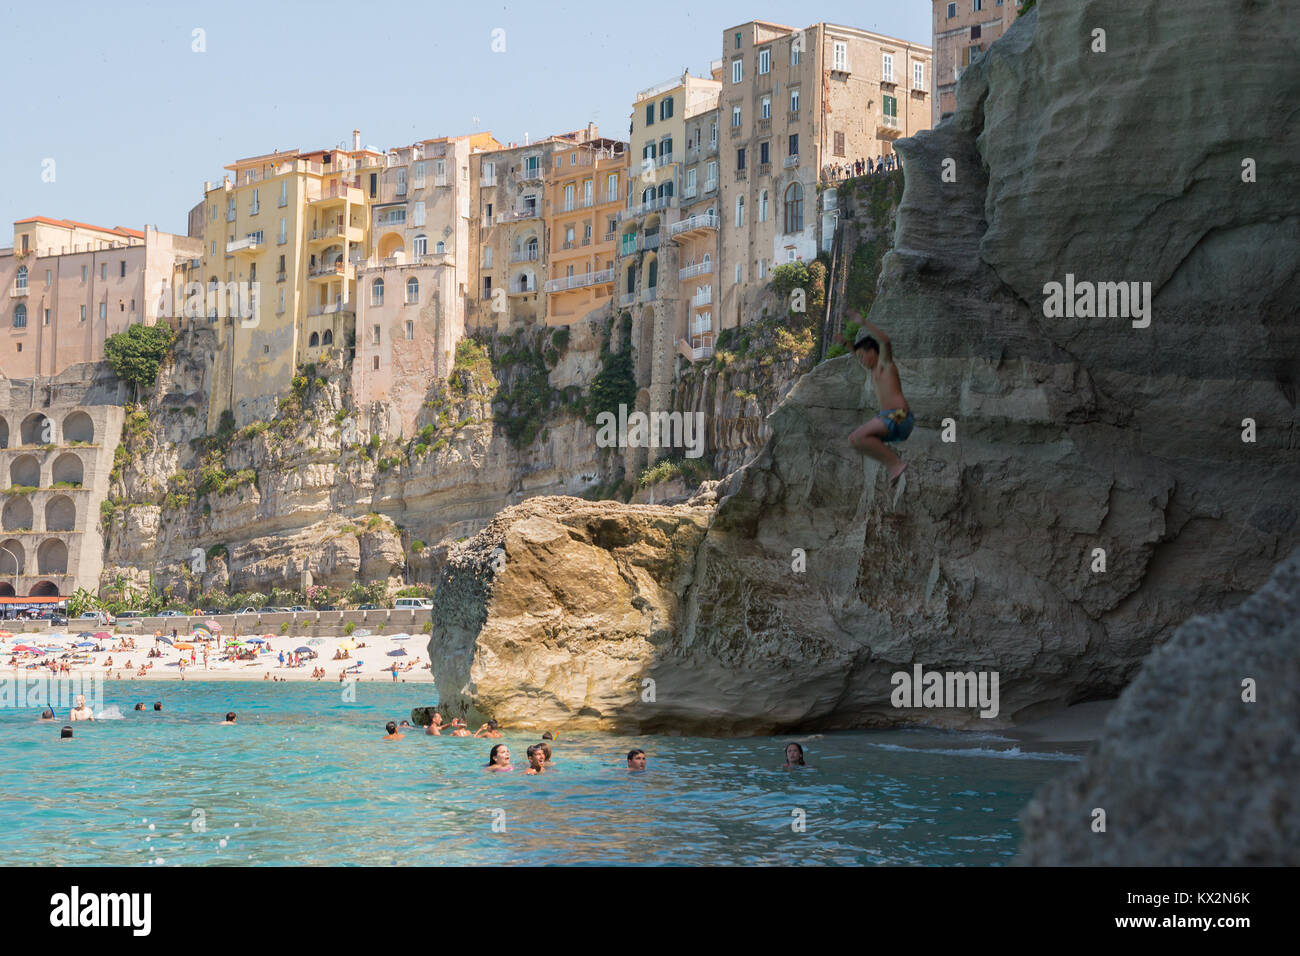 Tropea, Italia - Giugno 2013: persone nuoto sulla spiaggia in una popolare destinazione estiva, Tropea, Italia. Foto Stock